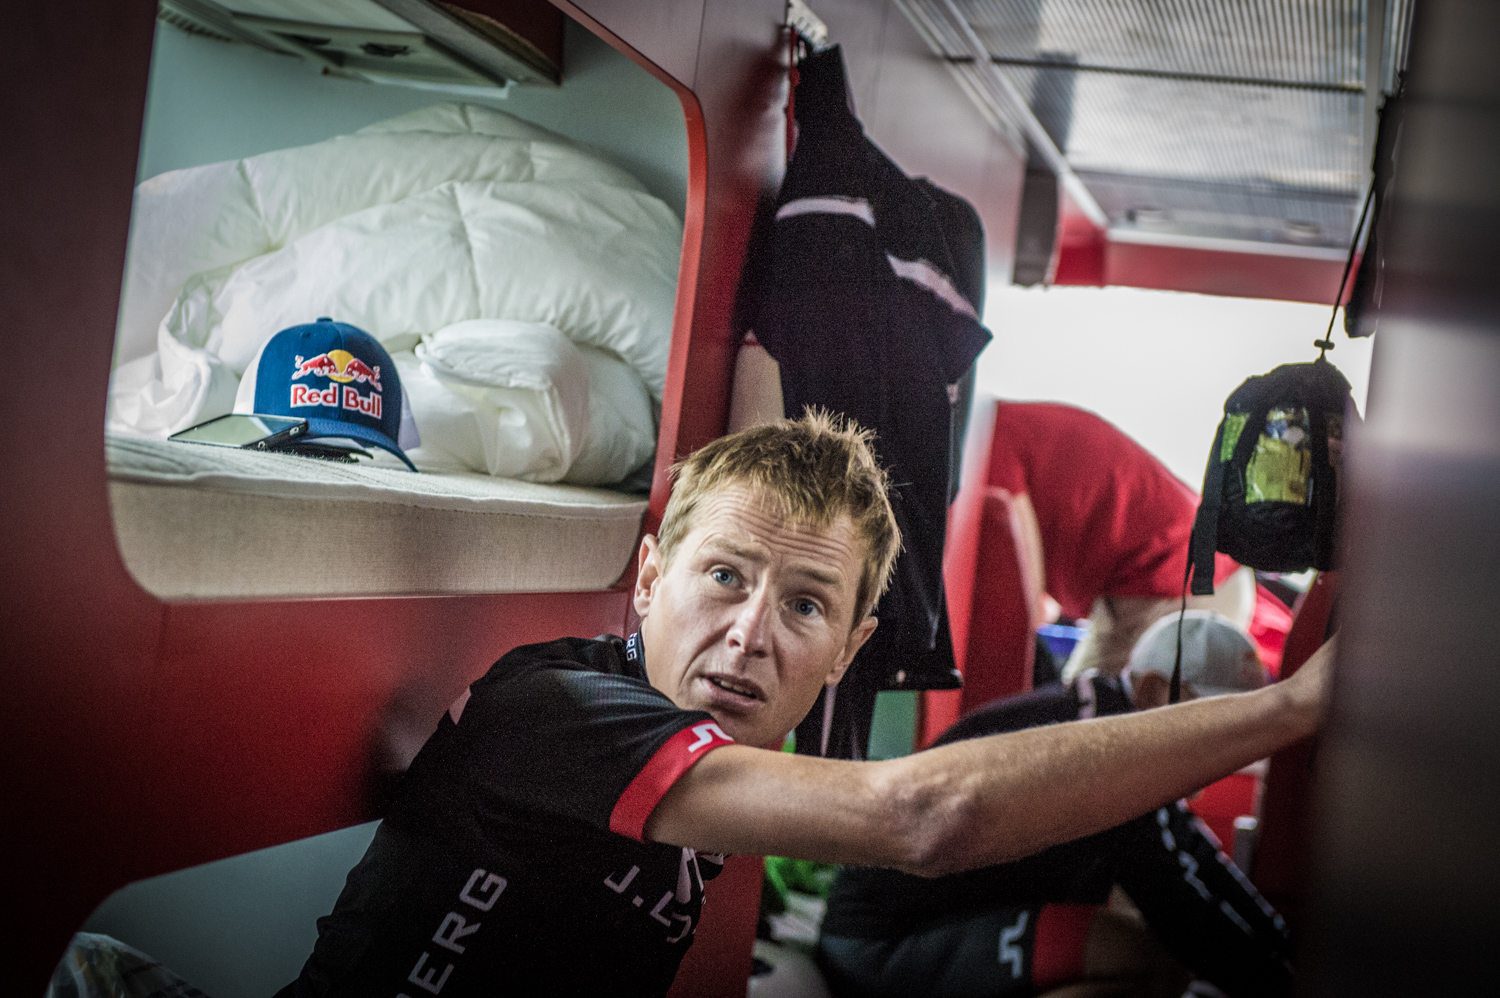 Red Bull Team at Race Around Austria 2014, Andreas Goldberger,Sportfotografie, Land Salzburg, Lorenz Masser